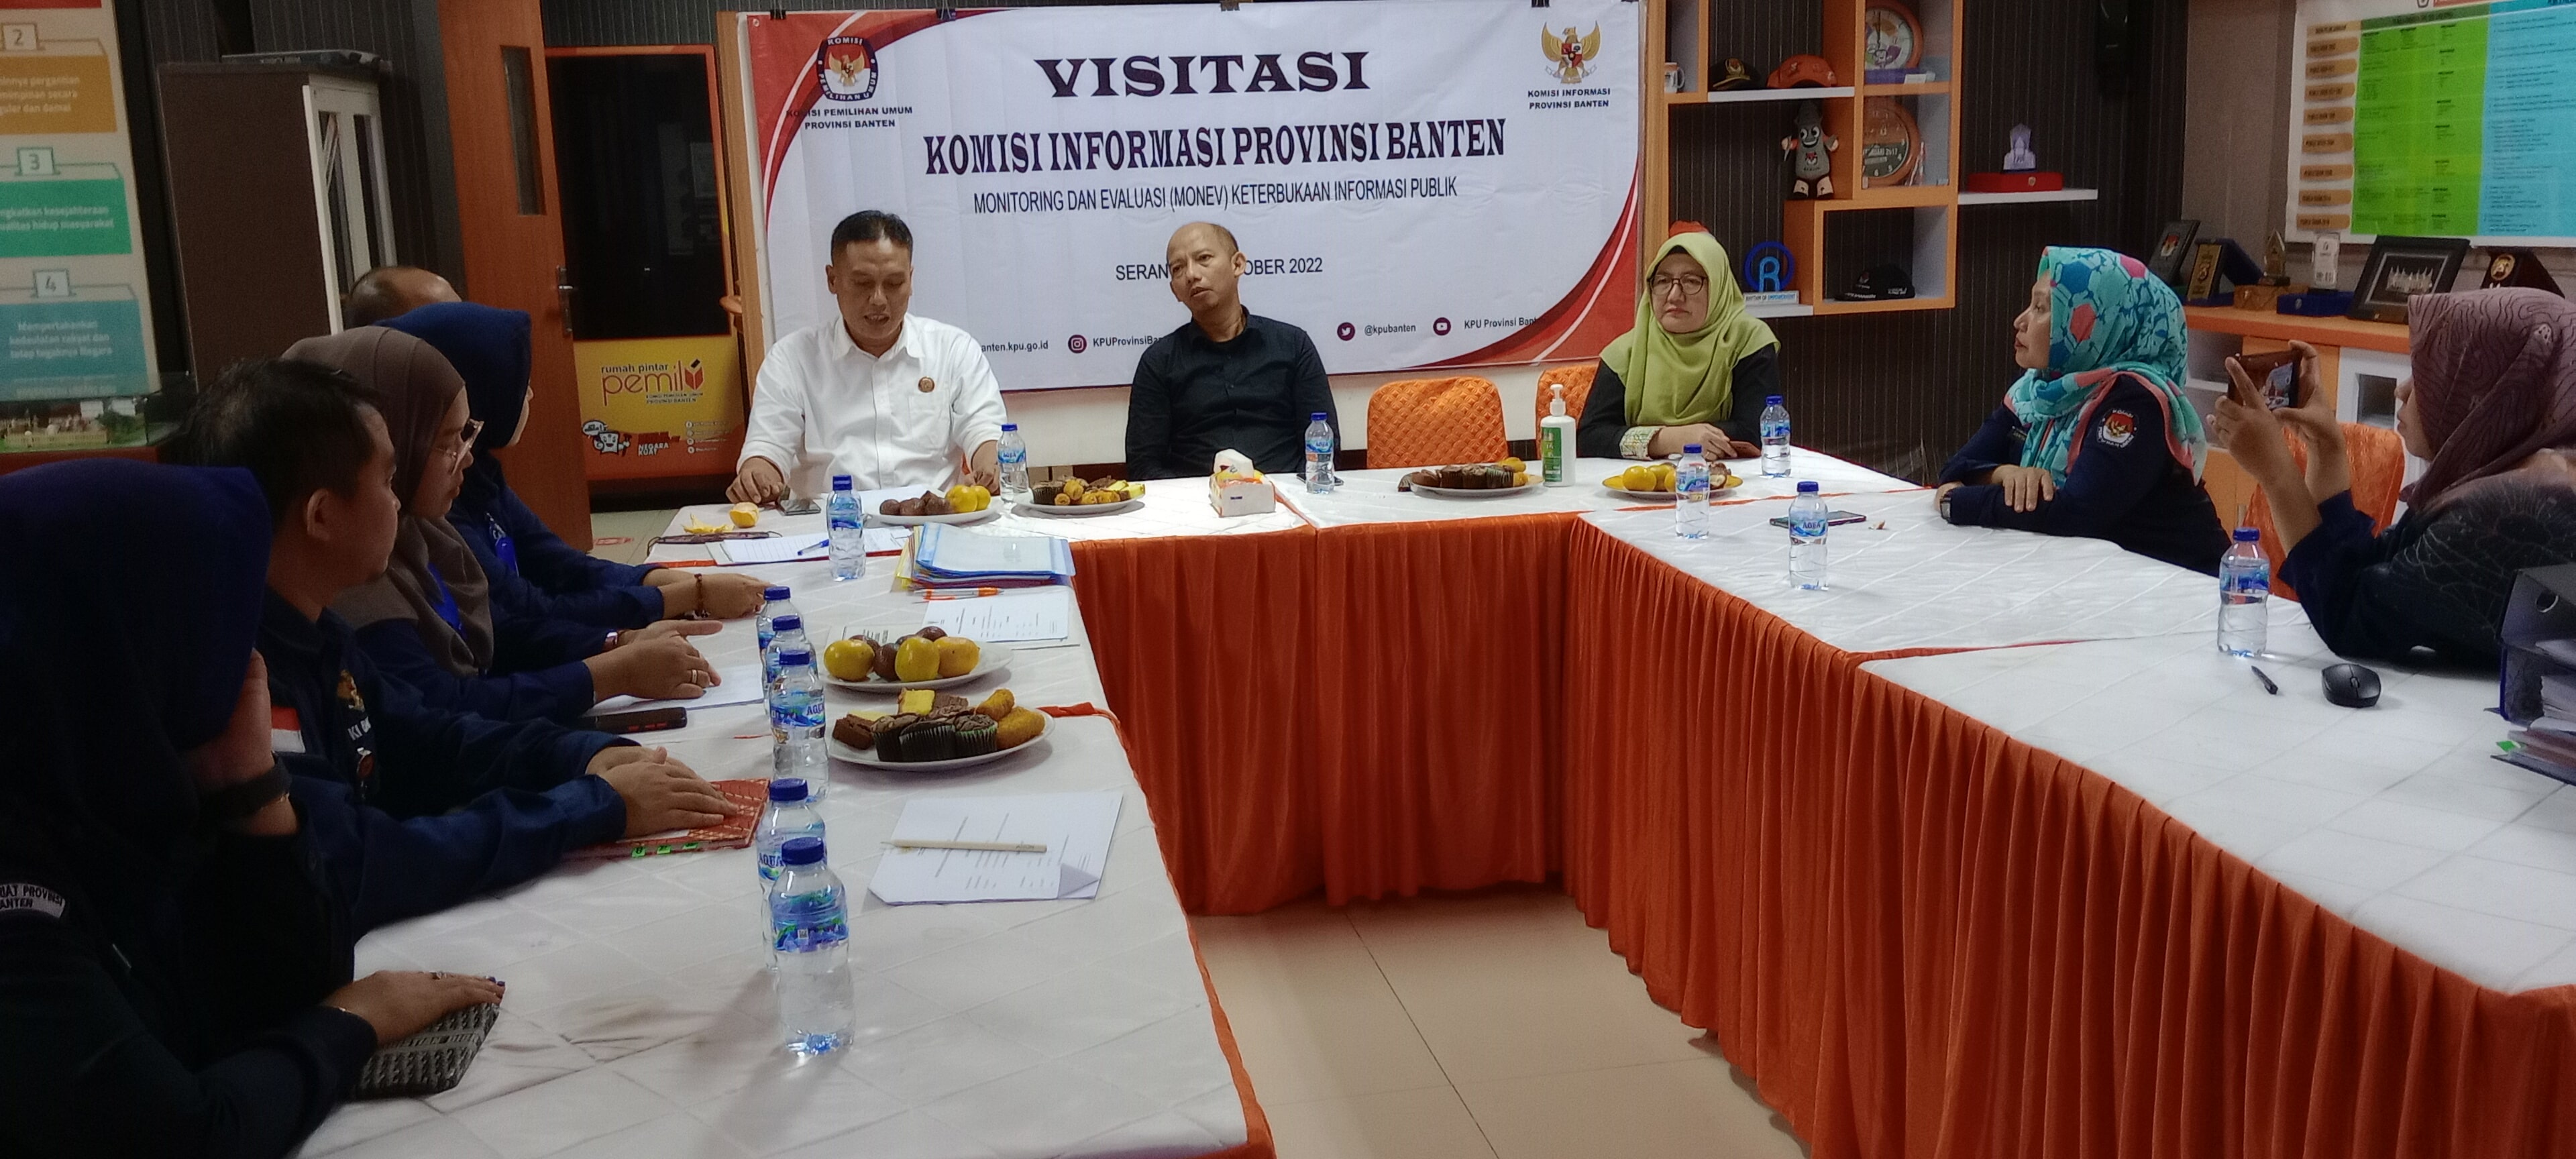 Visitasi Komisi Informasi Provinsi Banten Monev Keterbukaan Informasi Publik Tahun 2022